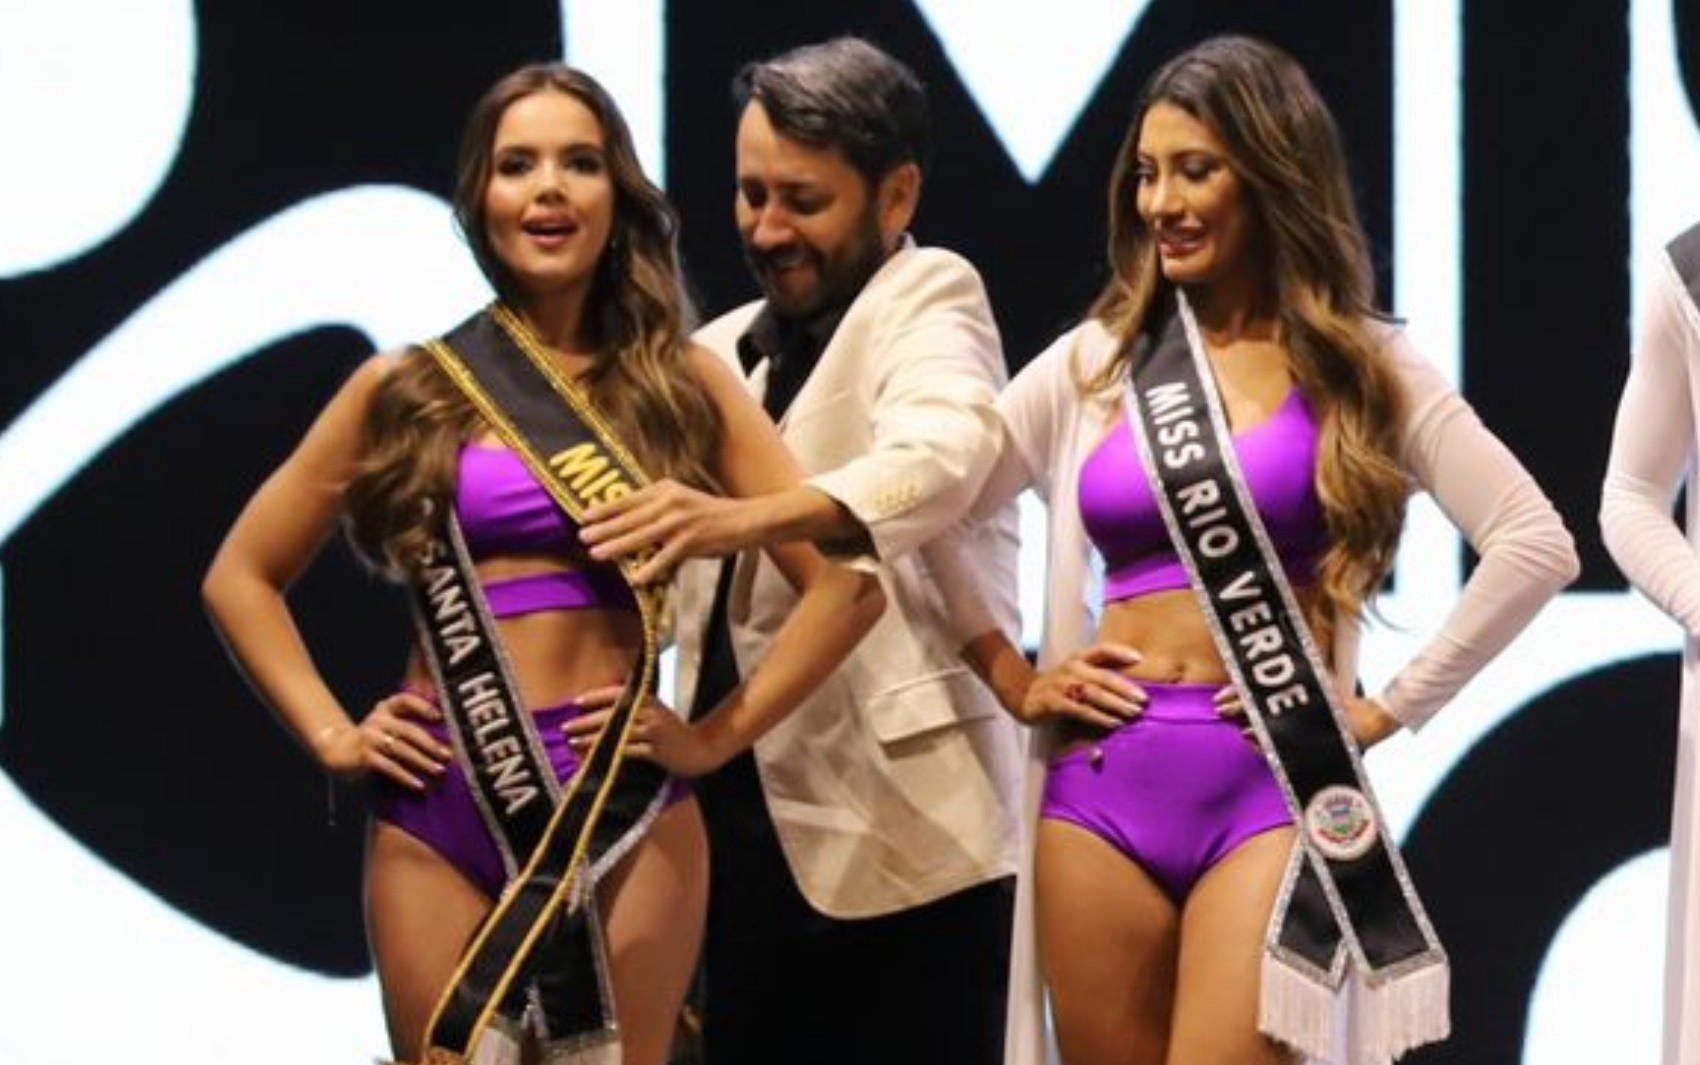 Coordenador do Miss Goiás que entregou faixa para candidata que não venceu admite erro: ‘Pedi desculpa’